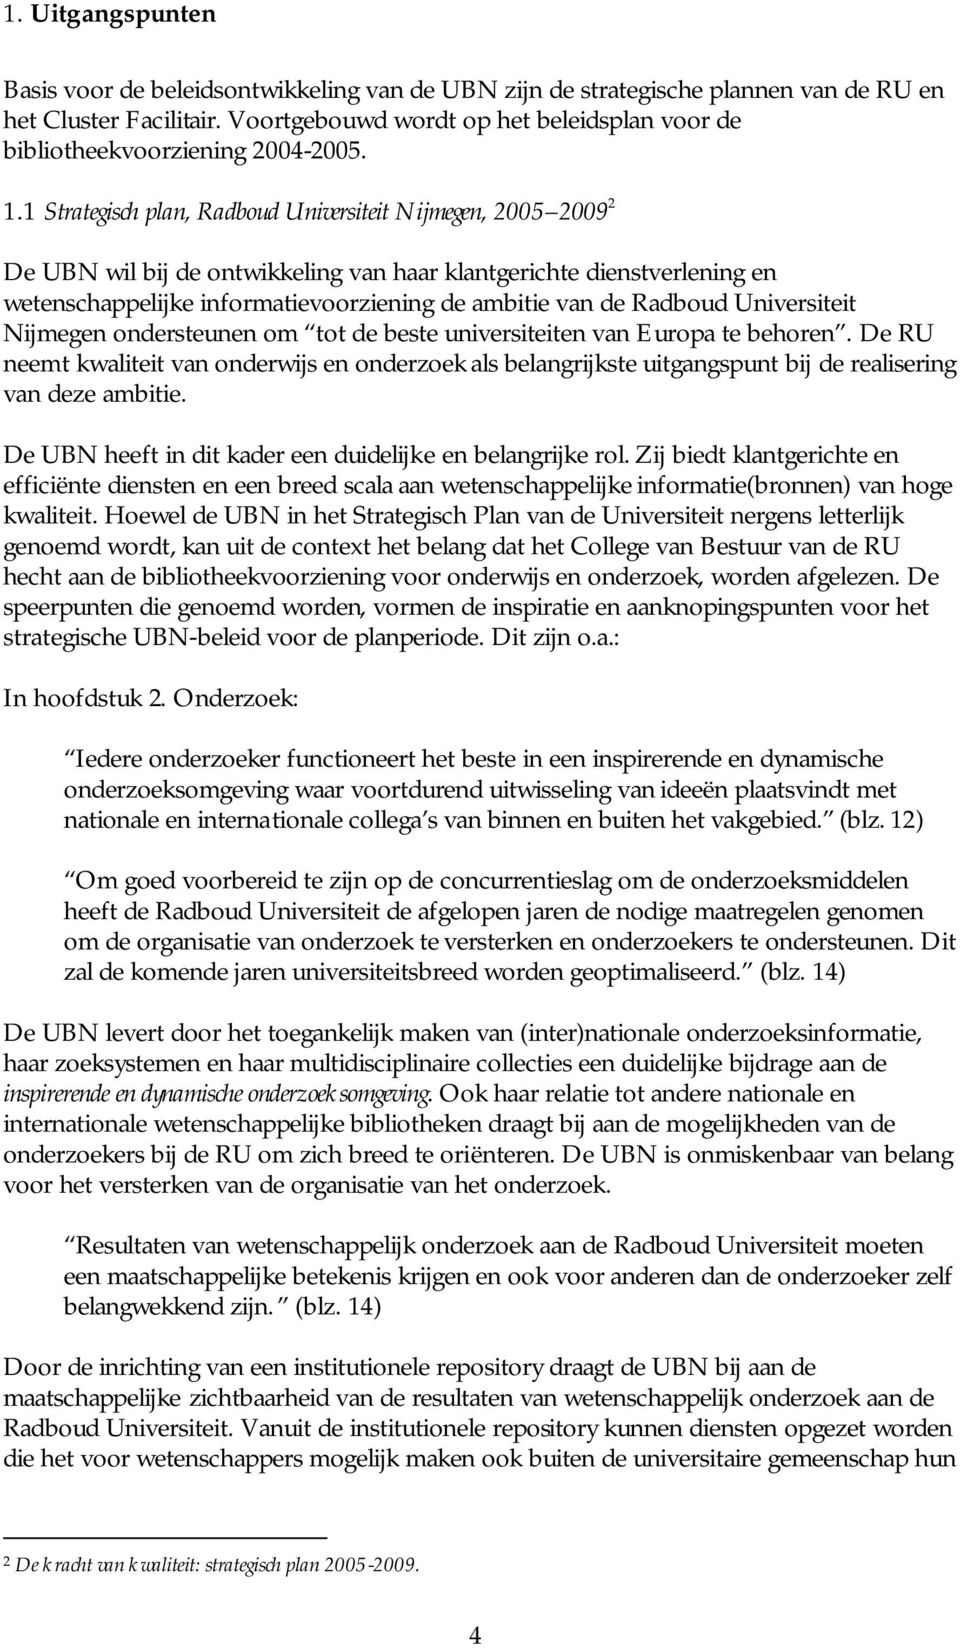 1 Strategisch plan, Radboud Universiteit Nijmegen, 2005 2009 2 De UBN wil bij de ontwikkeling van haar klantgerichte dienstverlening en wetenschappelijke informatievoorziening de ambitie van de